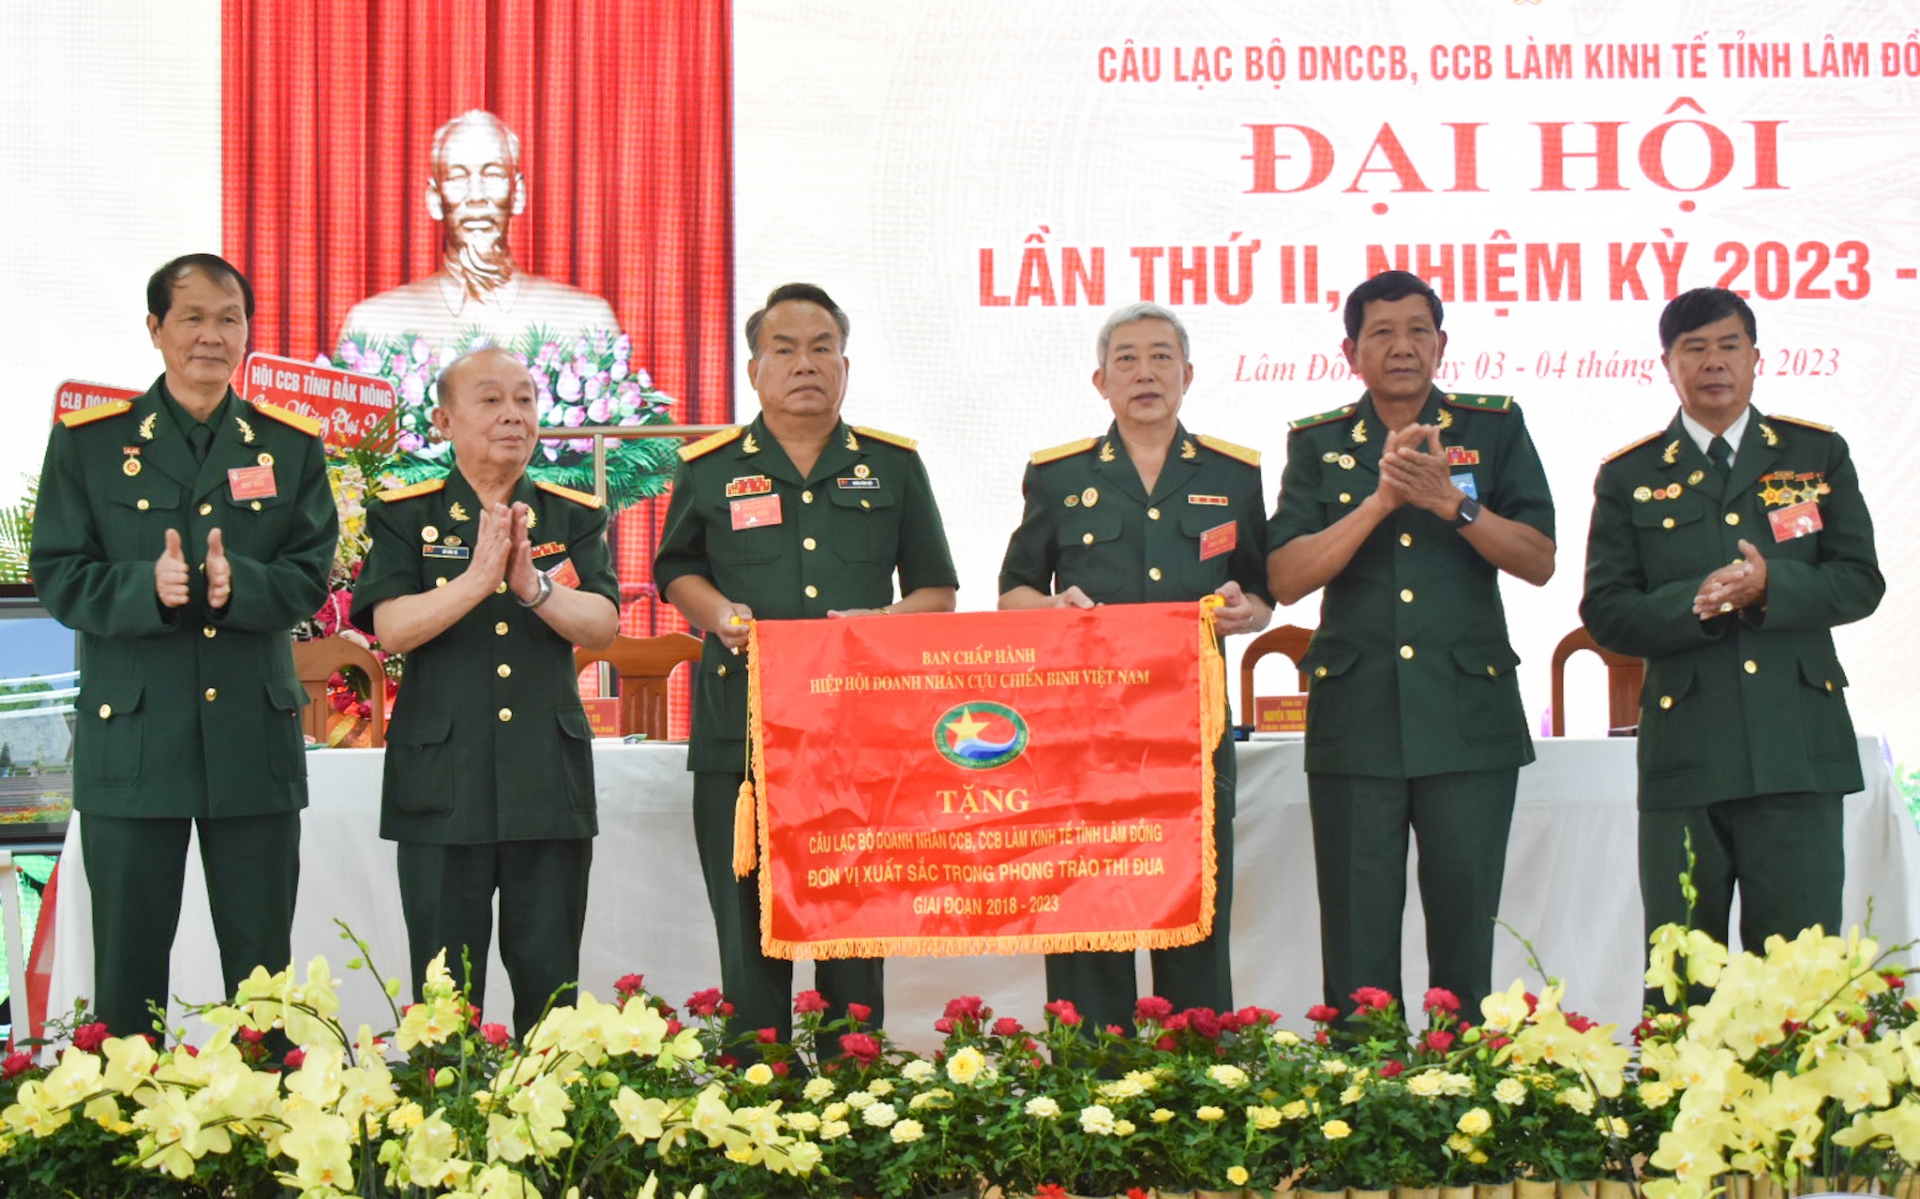 Hiệp Hội Doanh nhân CCB Việt Nam đã tặng Cờ thi đua cho CLB Doanh nhân CCB, CCB làm kinh tế tỉnh Lâm Đồng